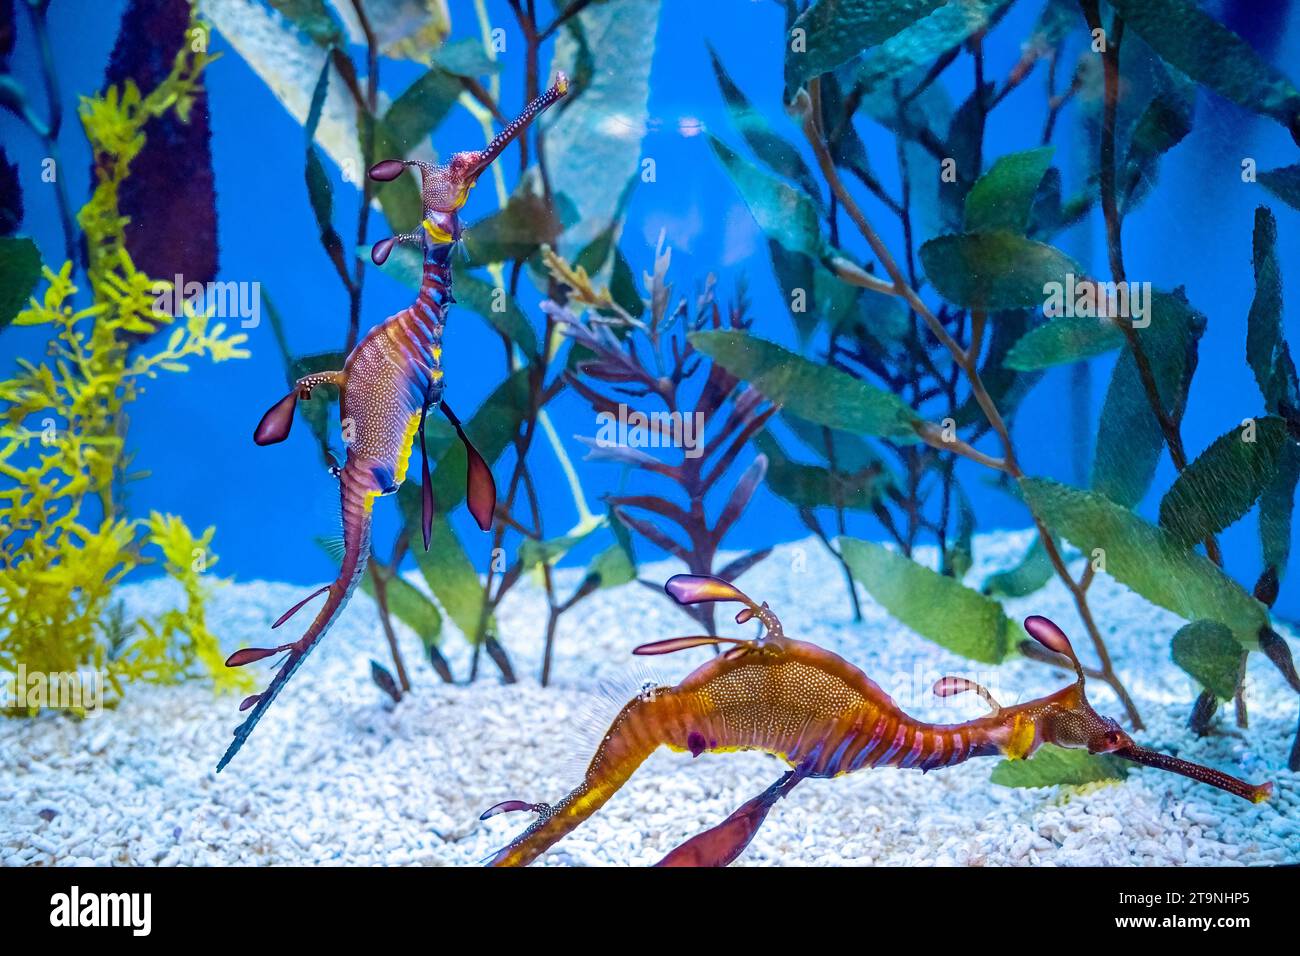 Mer hosre à l'aquarium à Barcelone Espagne Banque D'Images